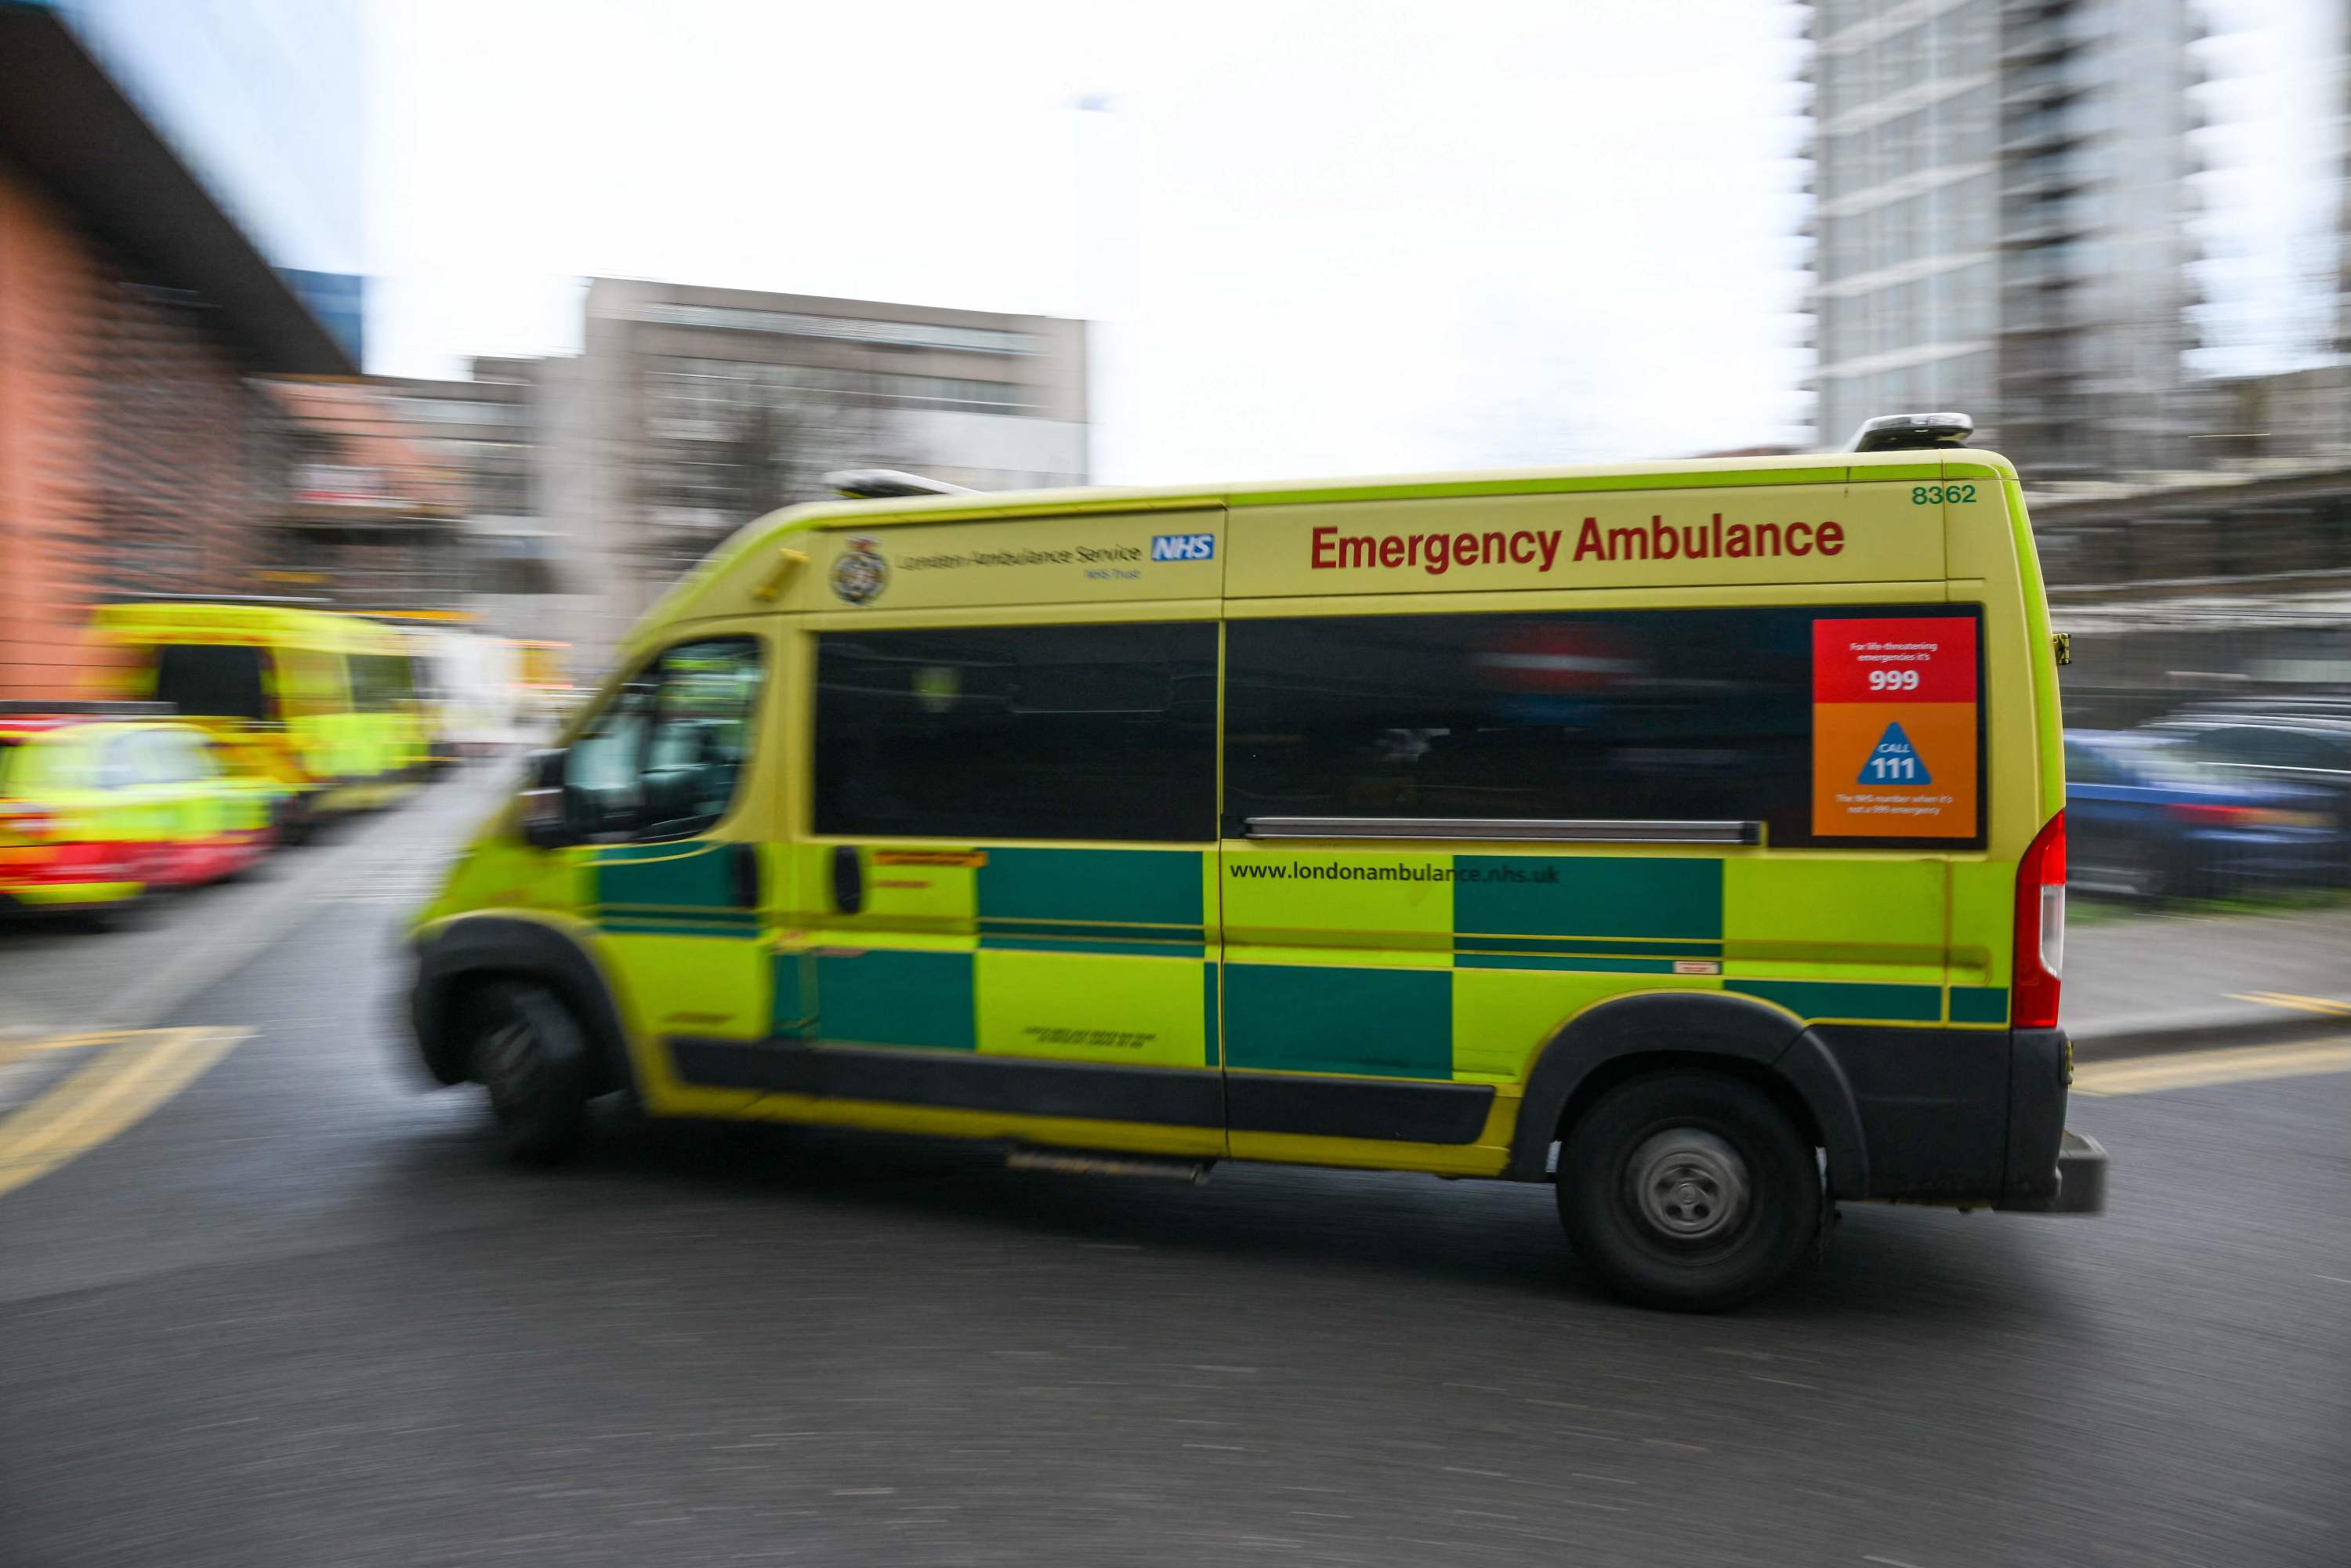 Un homme inculpé pour infraction terroriste après un incident dans un hôpital britannique